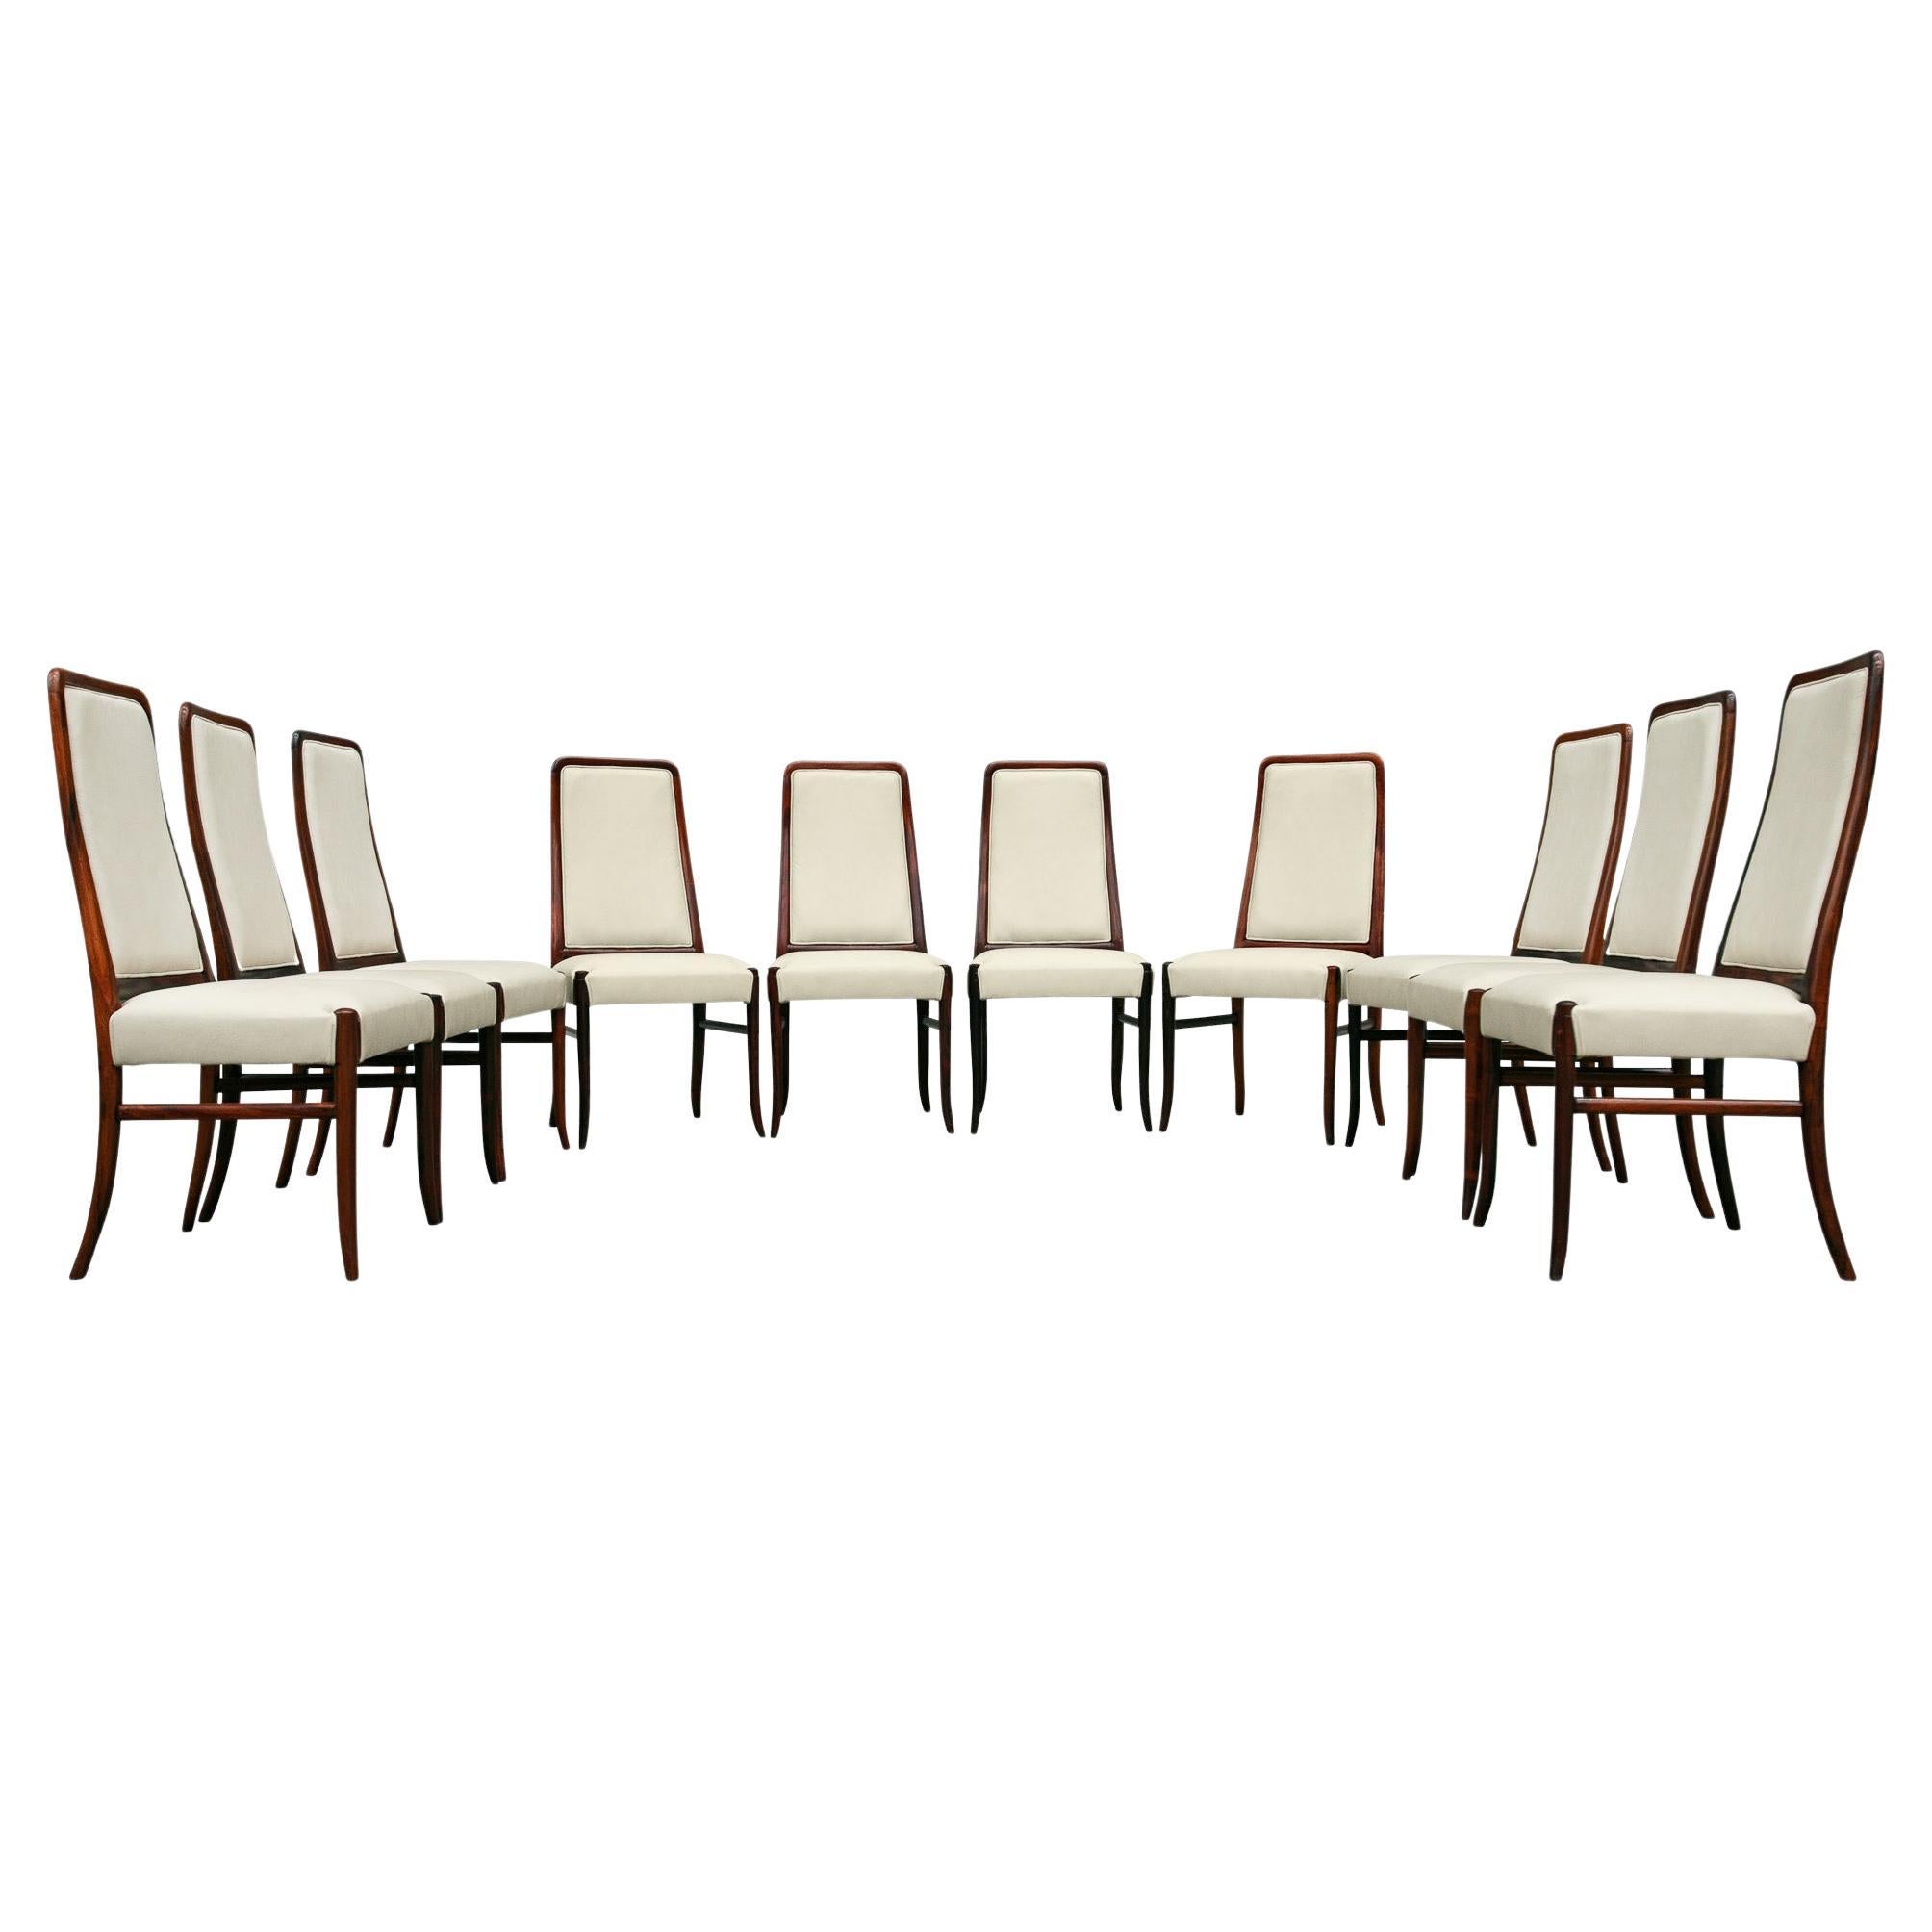 Ensemble de 10 chaises modernes brésiliennes en bois dur et cuir beige Joaquim Tenreiro, années 1960